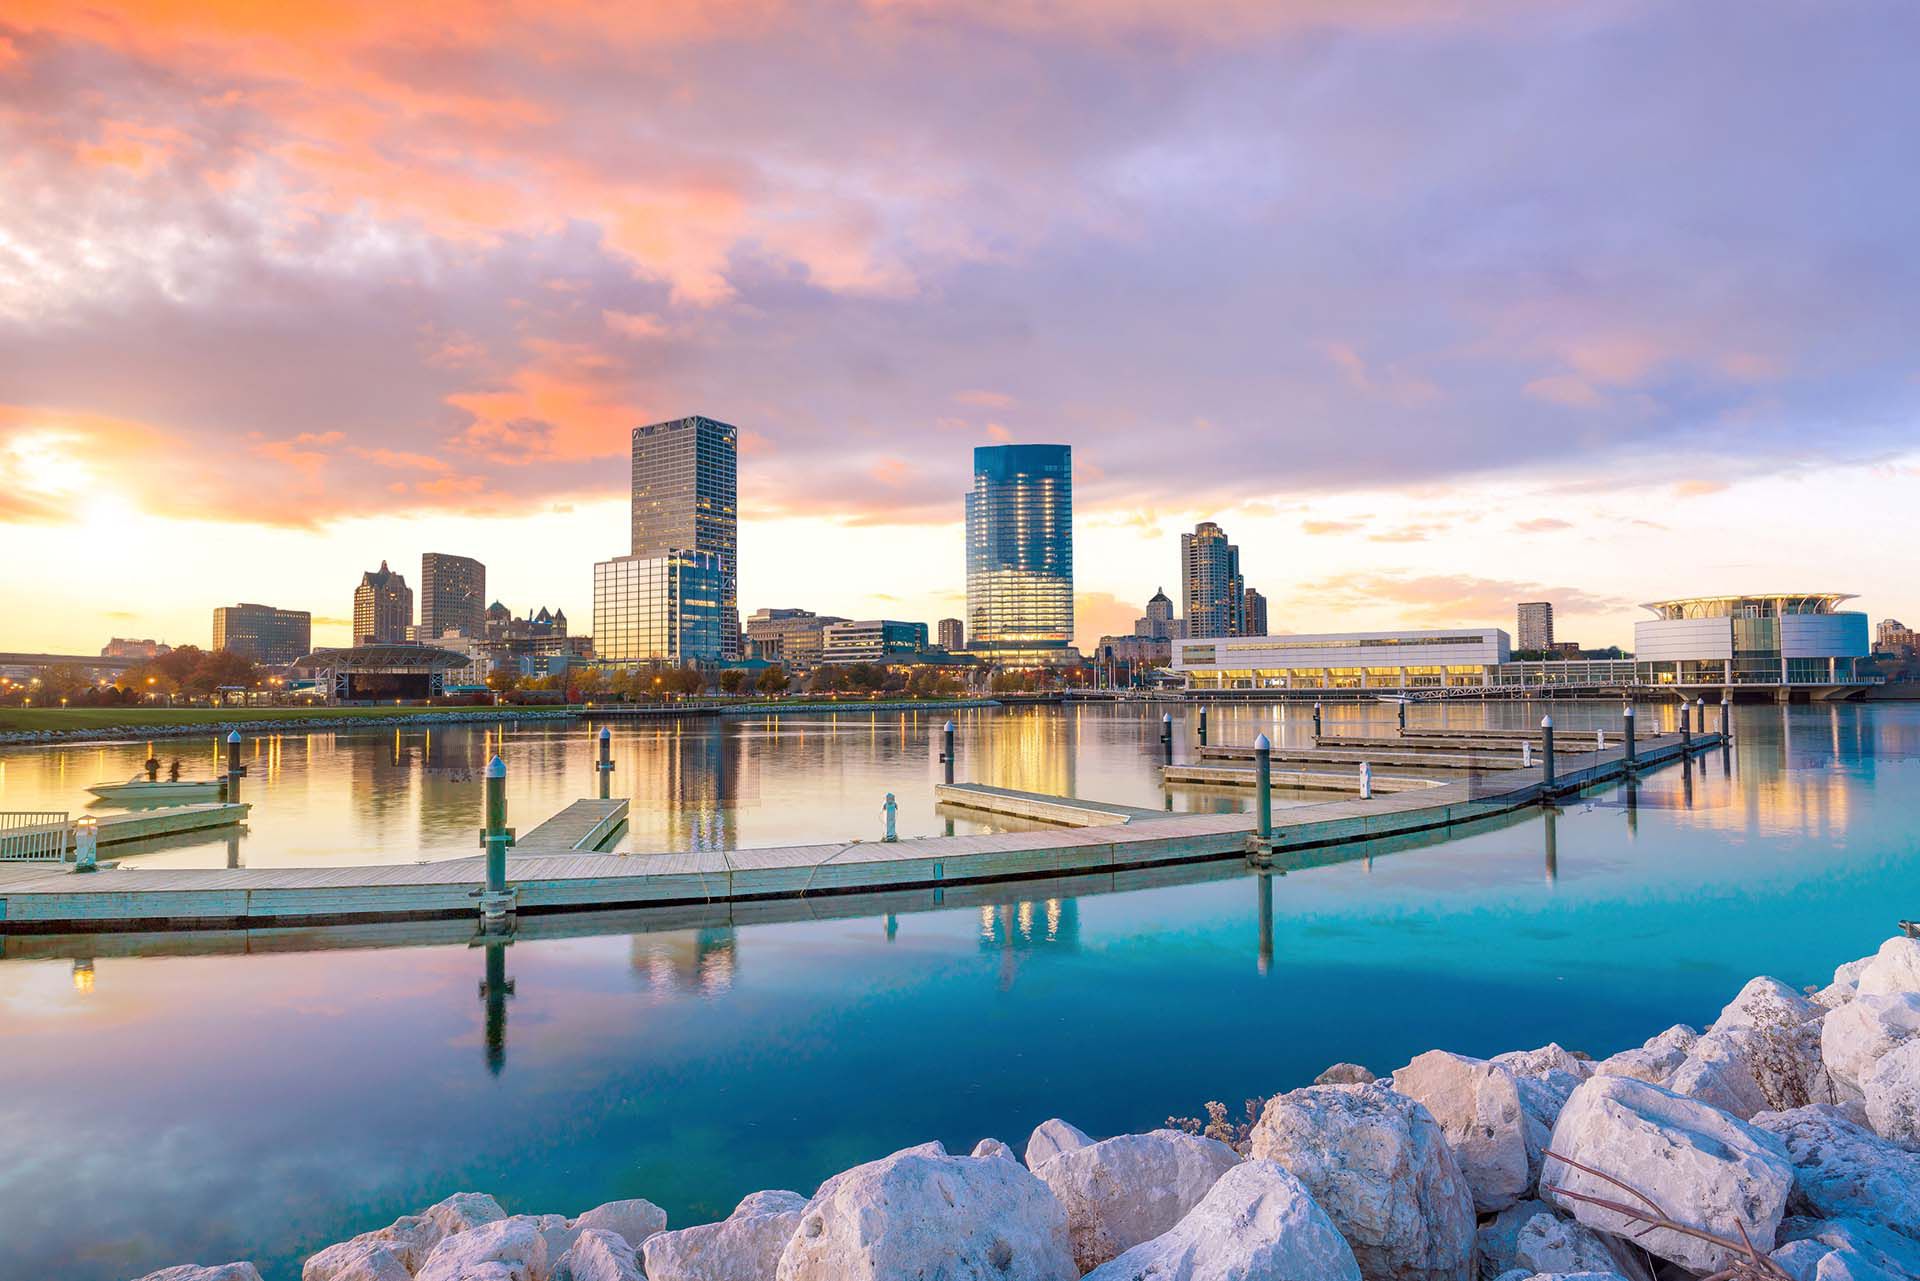 Milwaukee, Wisconsin, ocupa el primer lugar en la lista de destinos de tendencias de Airbnb para 2020 con un crecimiento masivo del 729% en las reservas anuales. Un tesoro histórico bañado por las orillas del lago Michigan